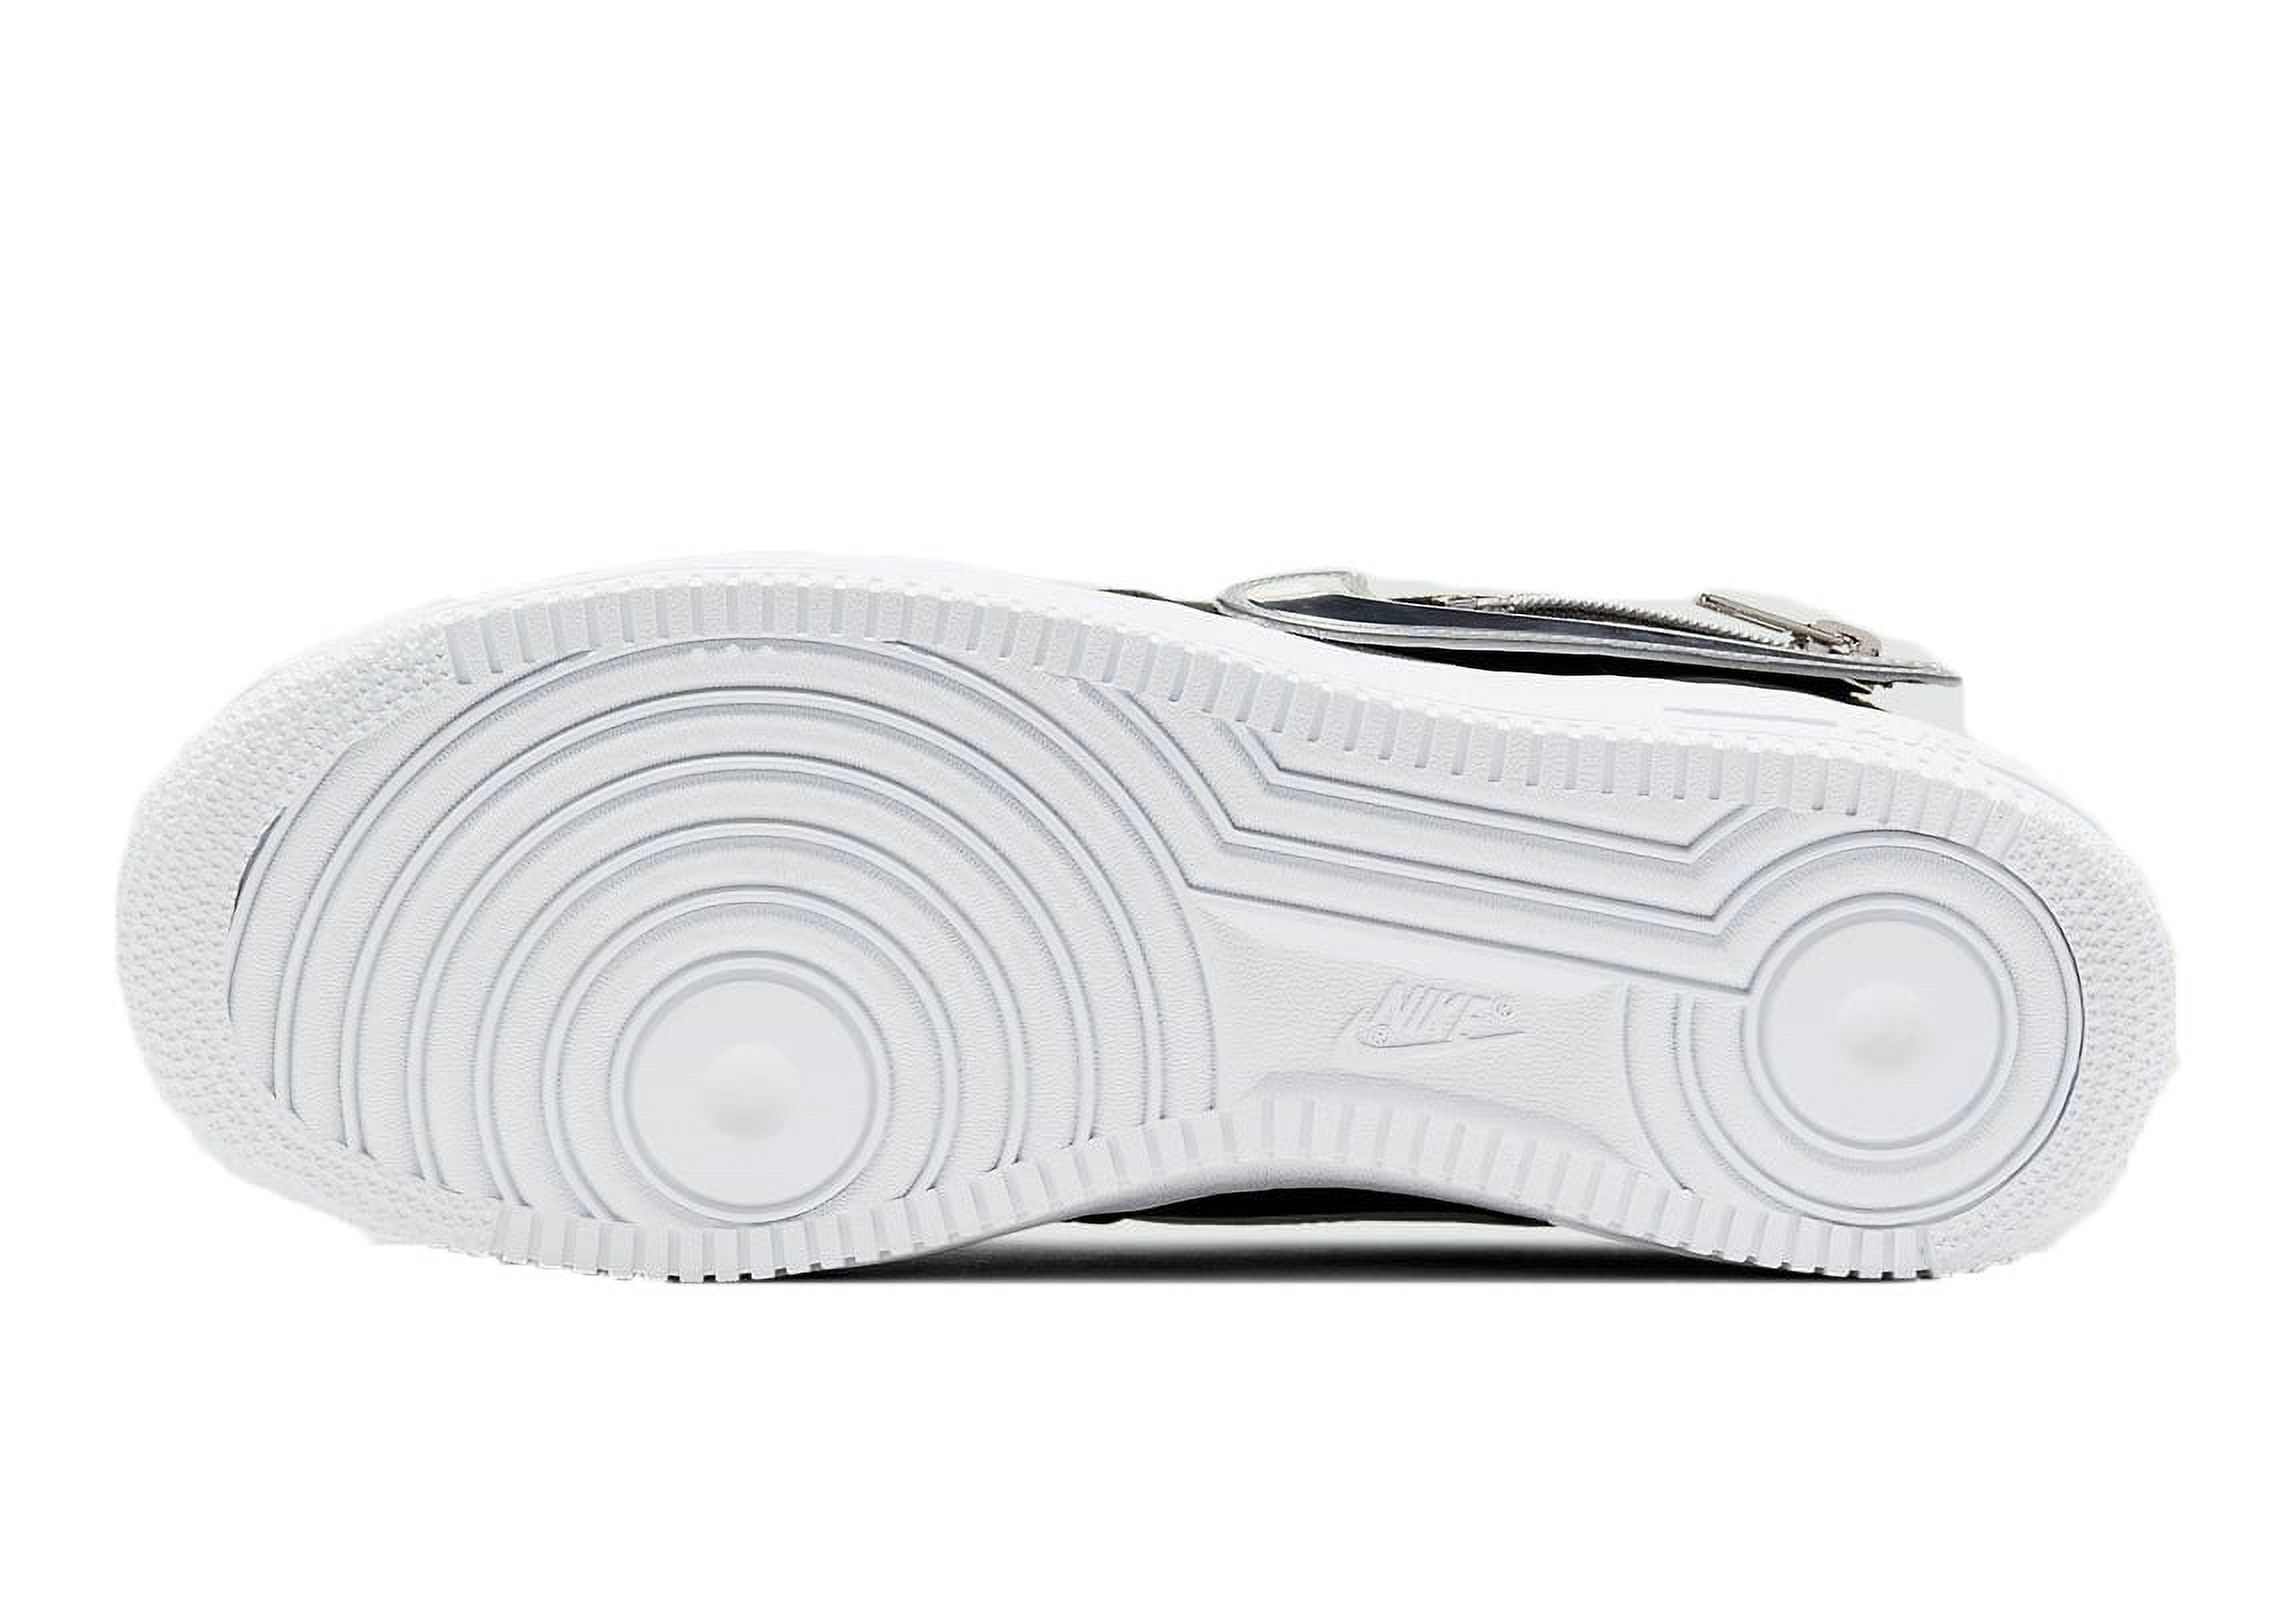 Nike Mens Air Force 1 '07 Premium "Zip Swoosh" Basketball Shoe (12) - image 5 of 6